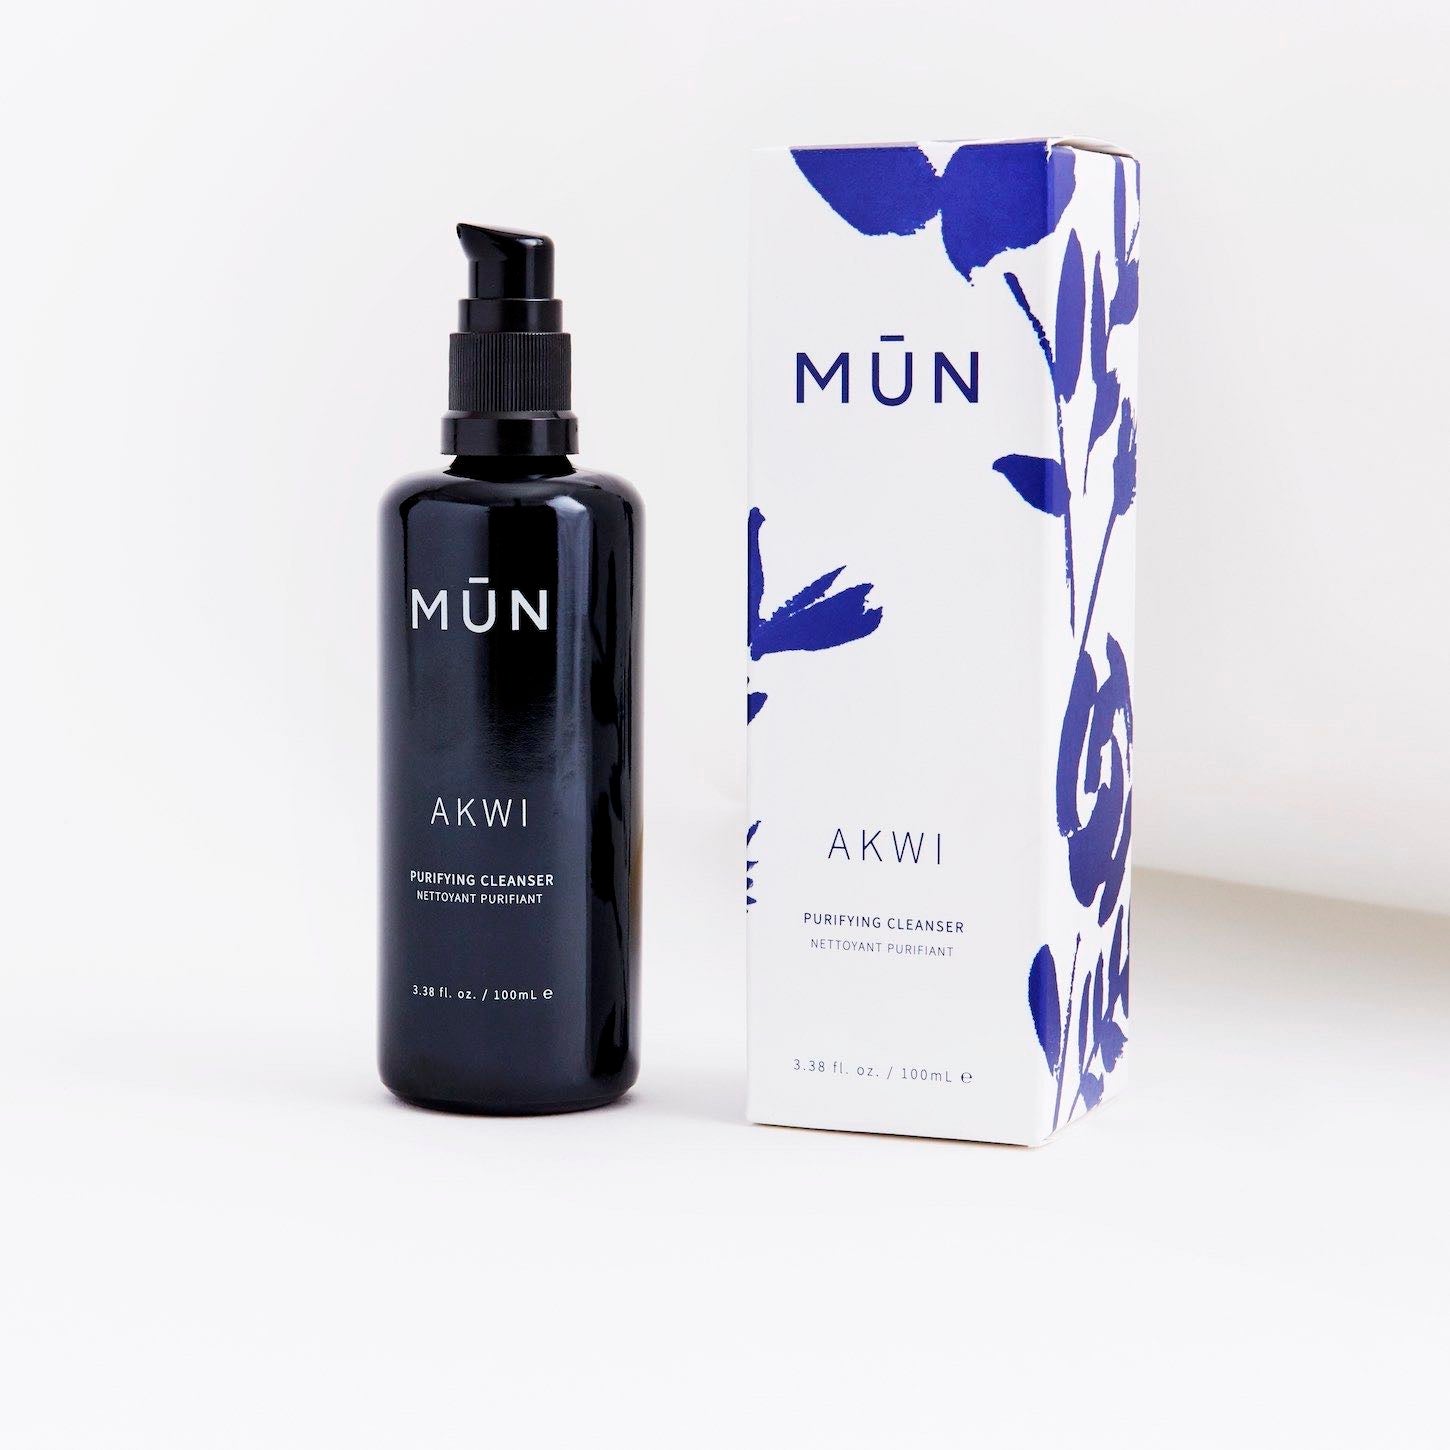 MUN Akwi Purifying Cleanser Packaging - Natural & Organic Skin Care